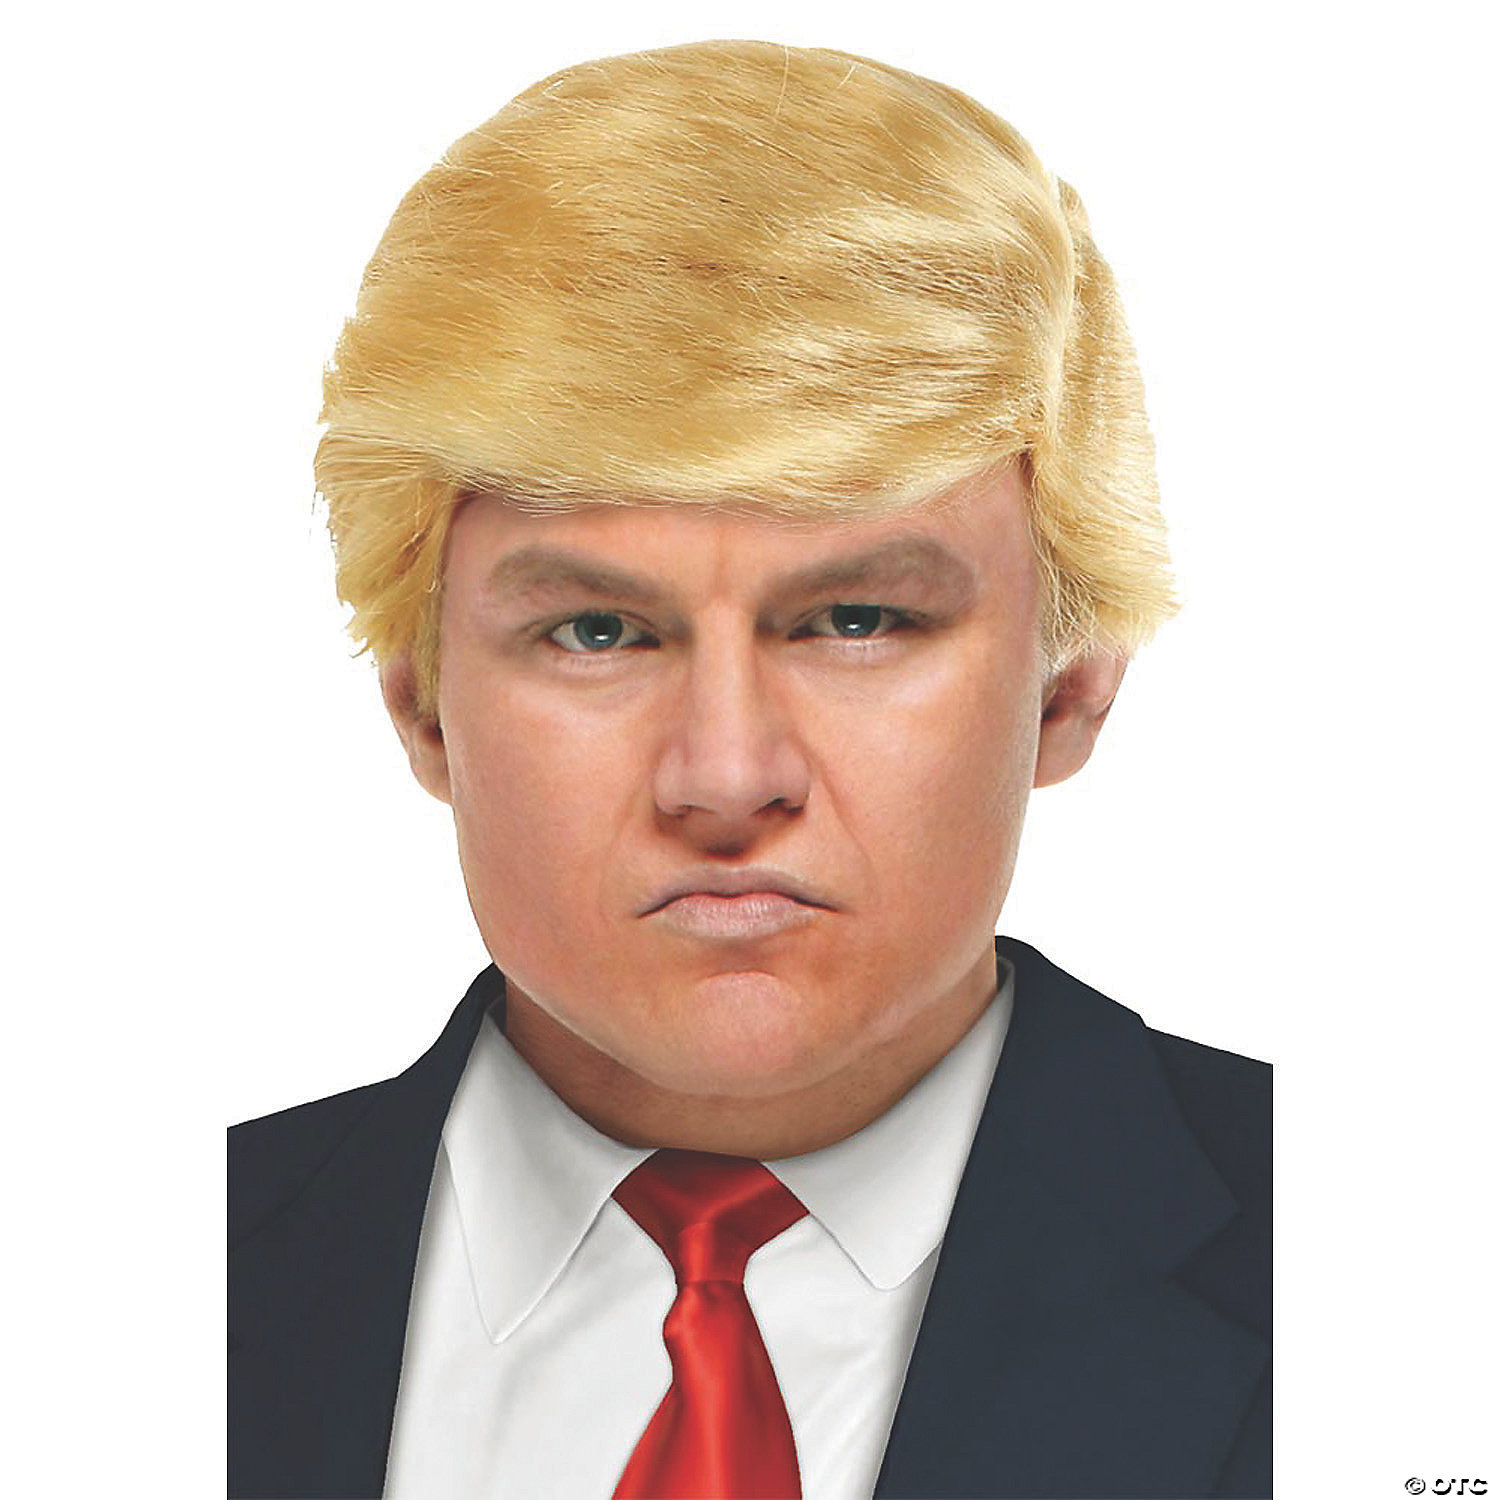 Дональд трамп без парика